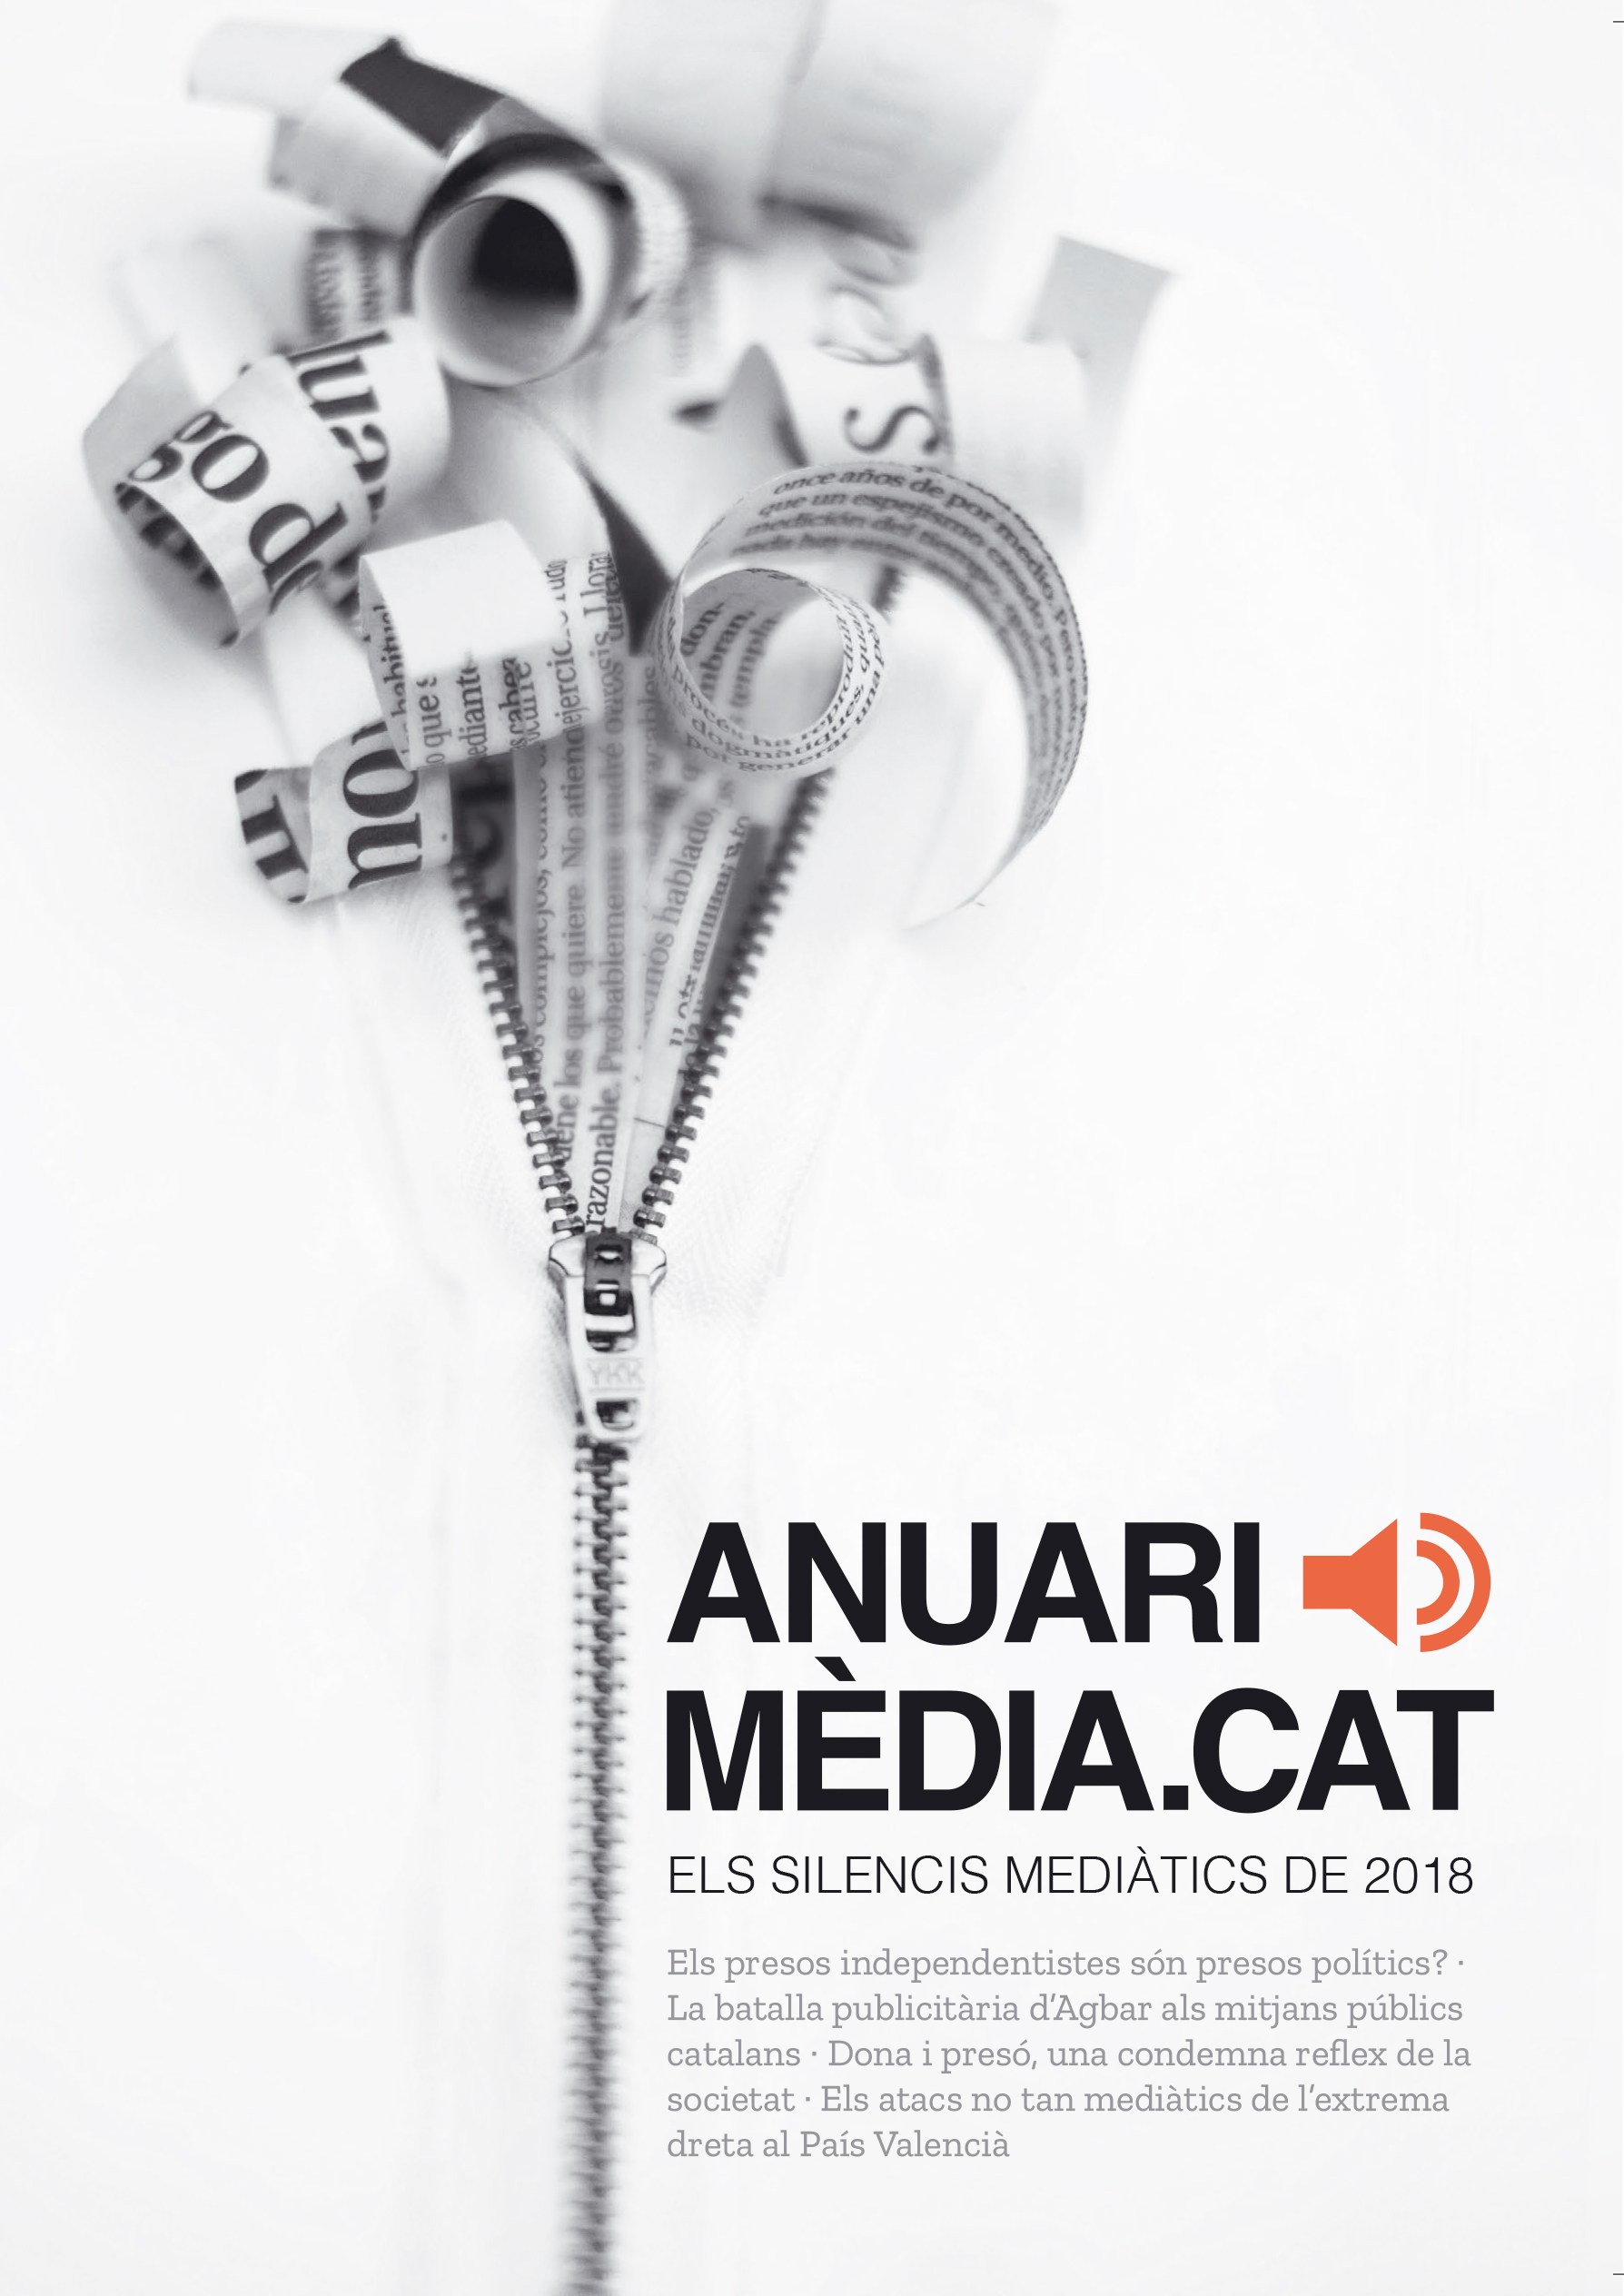 Anuari Mediacat 2018 - VV. AA.